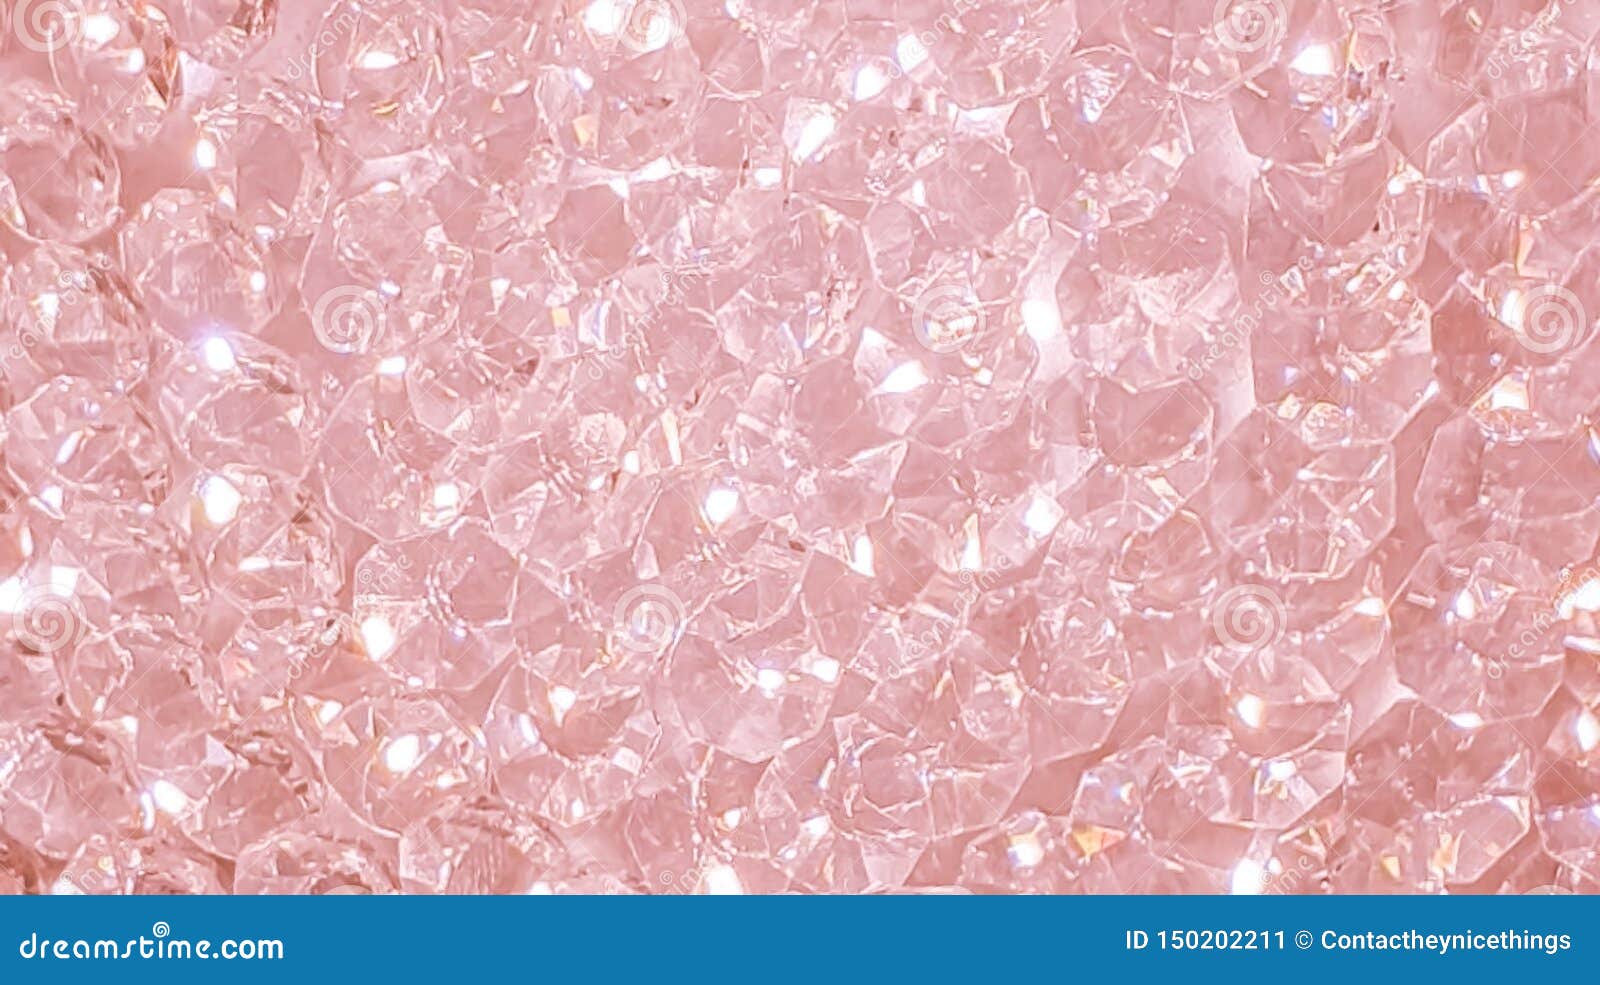 Hình nền sang trọng kim cương hồng là sự lựa chọn hoàn hảo cho những người muốn thể hiện sự đẳng cấp và quý phái. Với sự kết hợp tuyệt vời giữa màu hồng và trắng, bạn sẽ cảm nhận được sự thanh lịch và tinh tế của gam màu này.